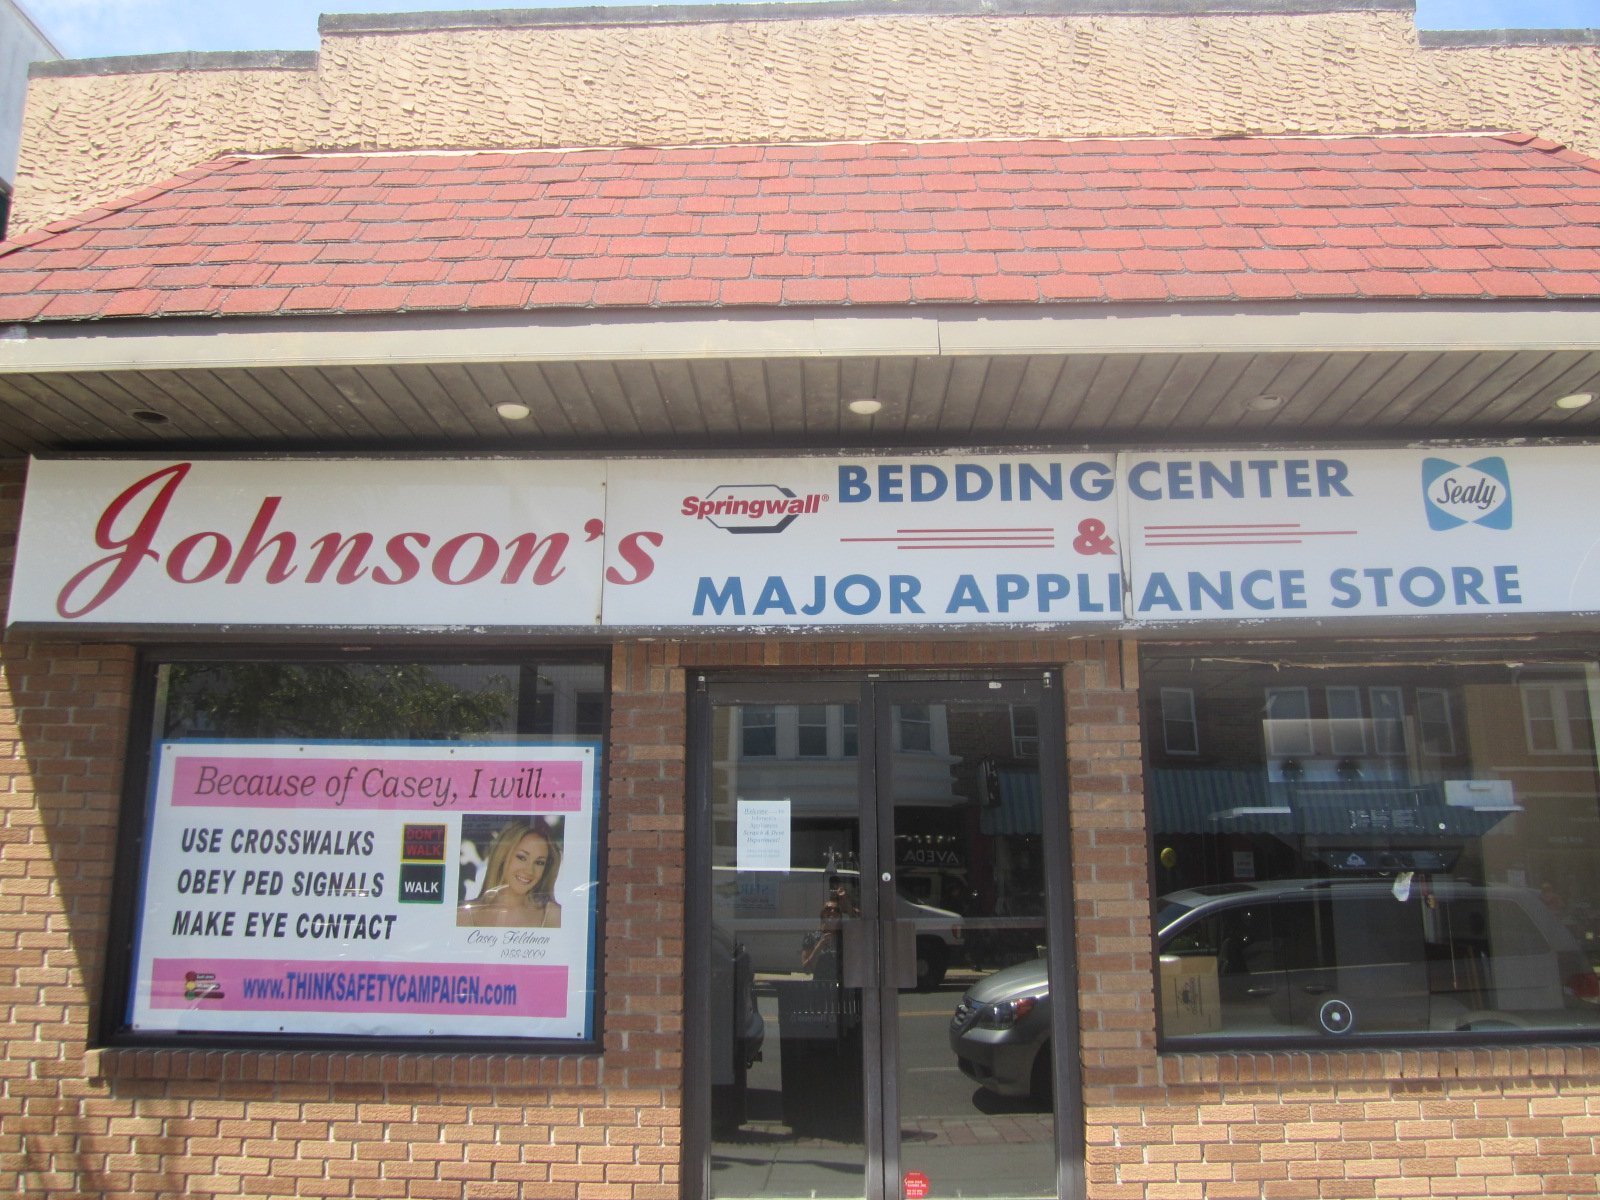 Johnson's Bedding Center & Major Appliance Store - OCNJ